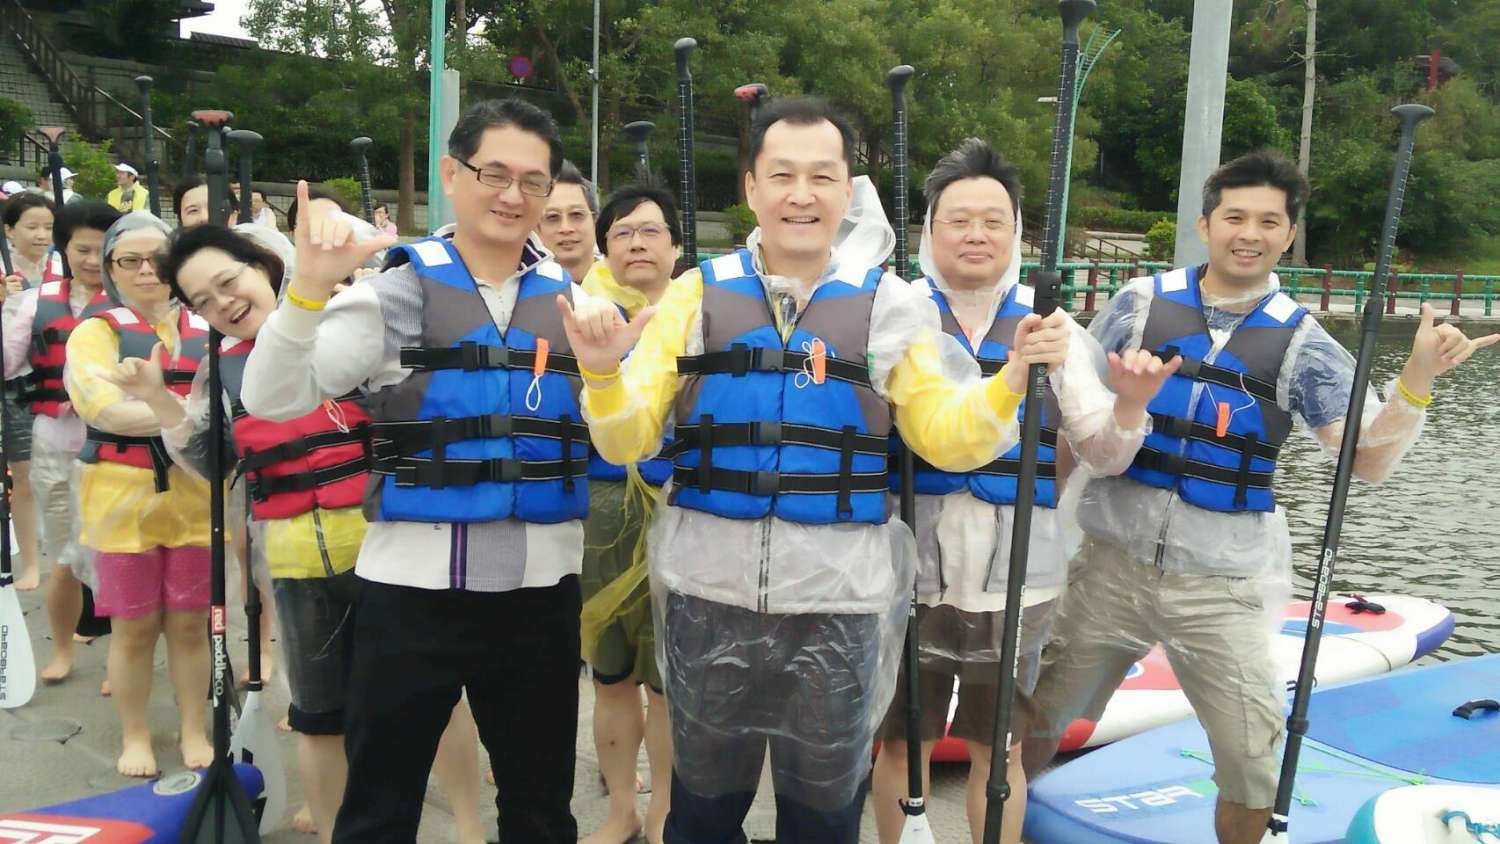 「百人白袍團」挑戰青草湖立式划槳 醫護人員難忘趣味新體驗